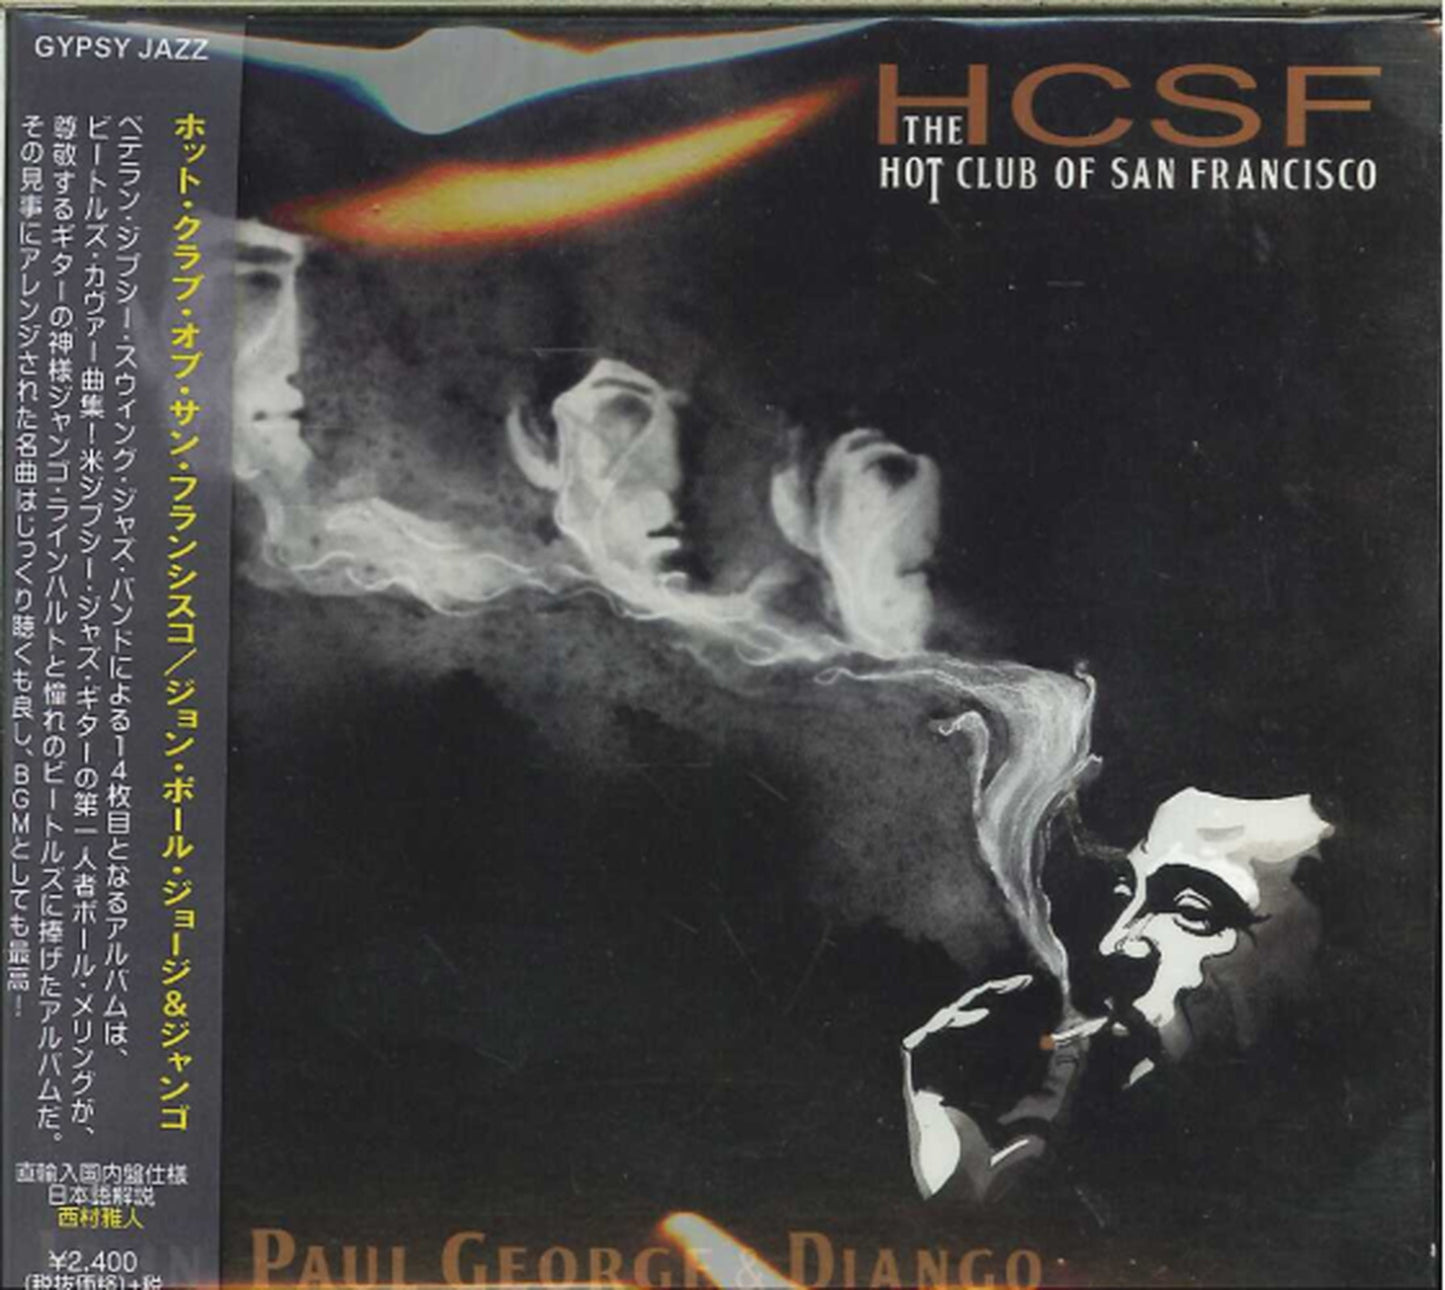 Hot Club Of San Francisco - John Paul George & Django - Japan CD